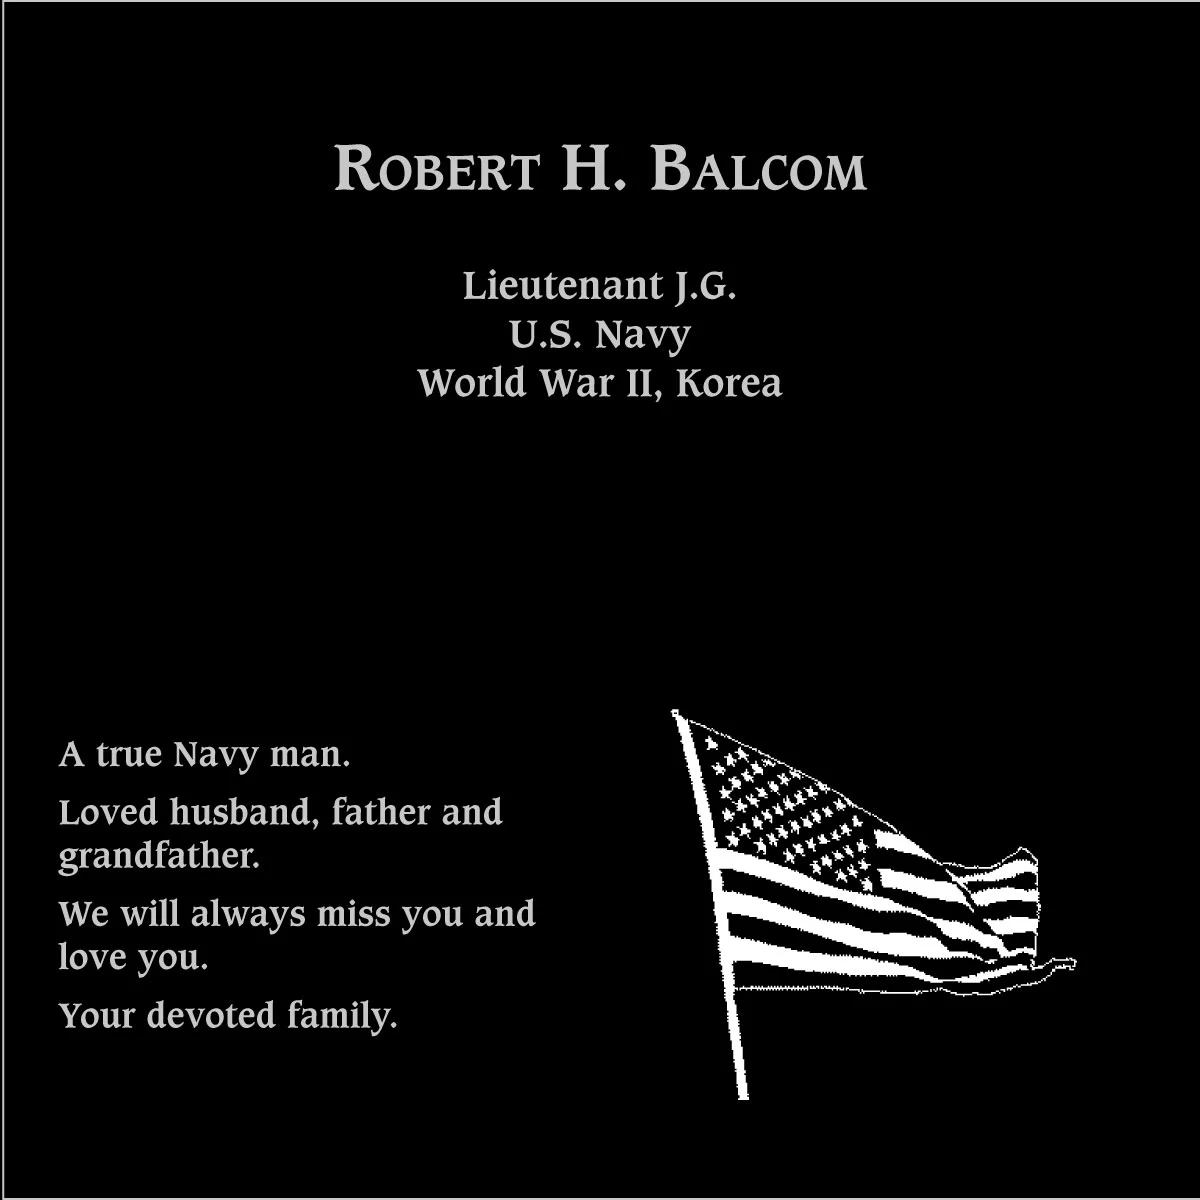 Robert H. Balcom